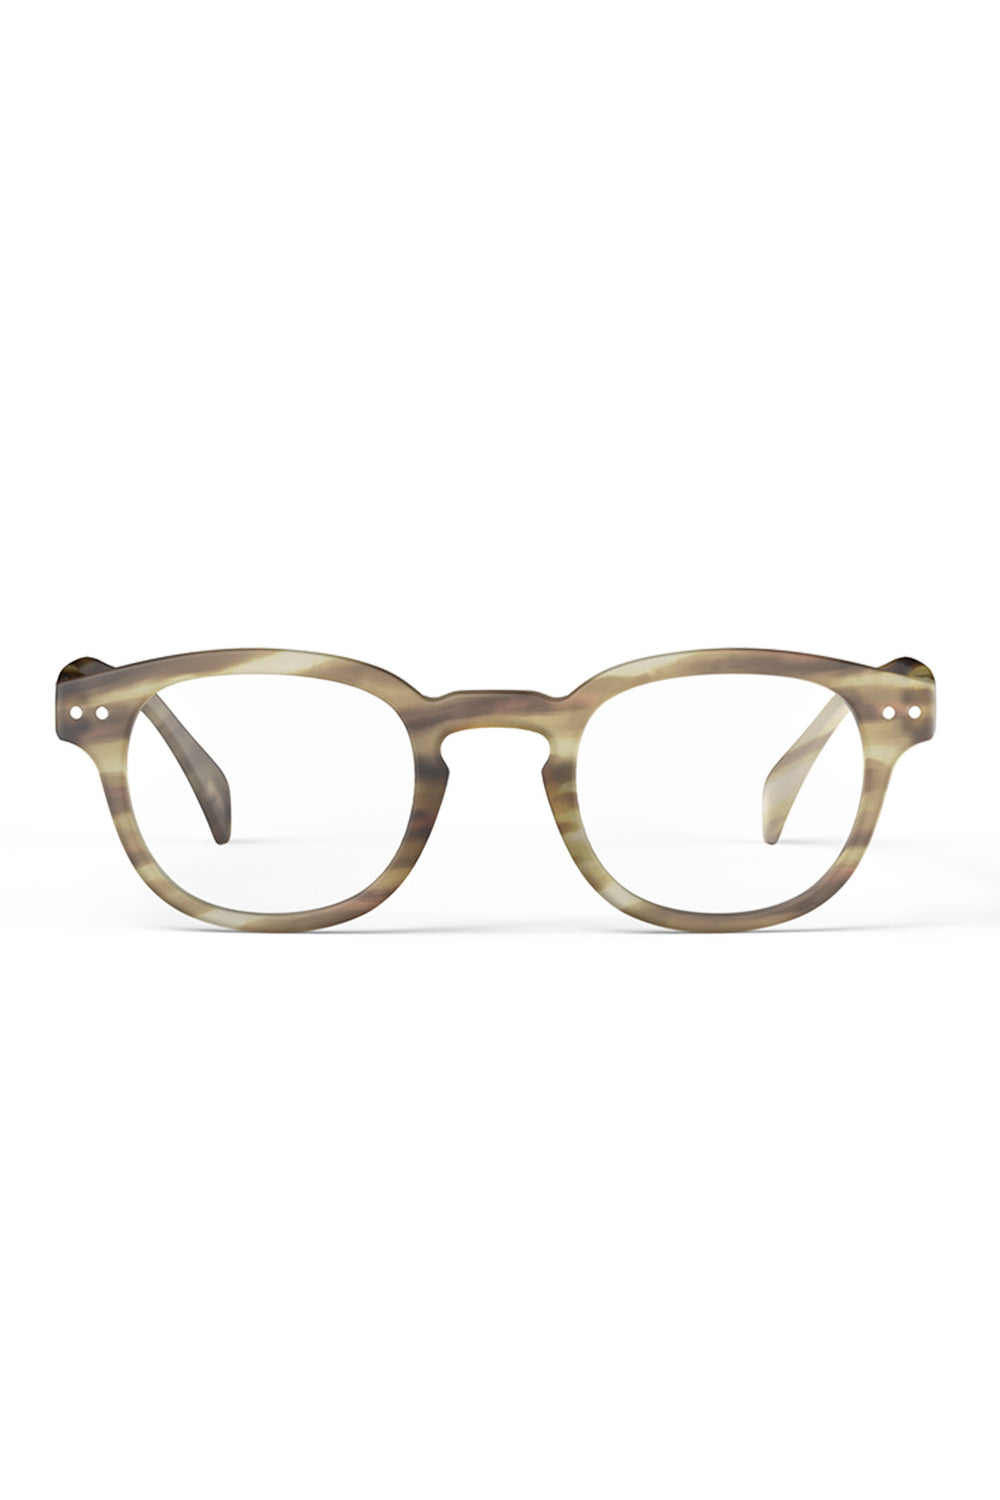 Izipizi Paris LMSCC216 Smoky Brown Reading Glasses - Olivia Grace Fashion